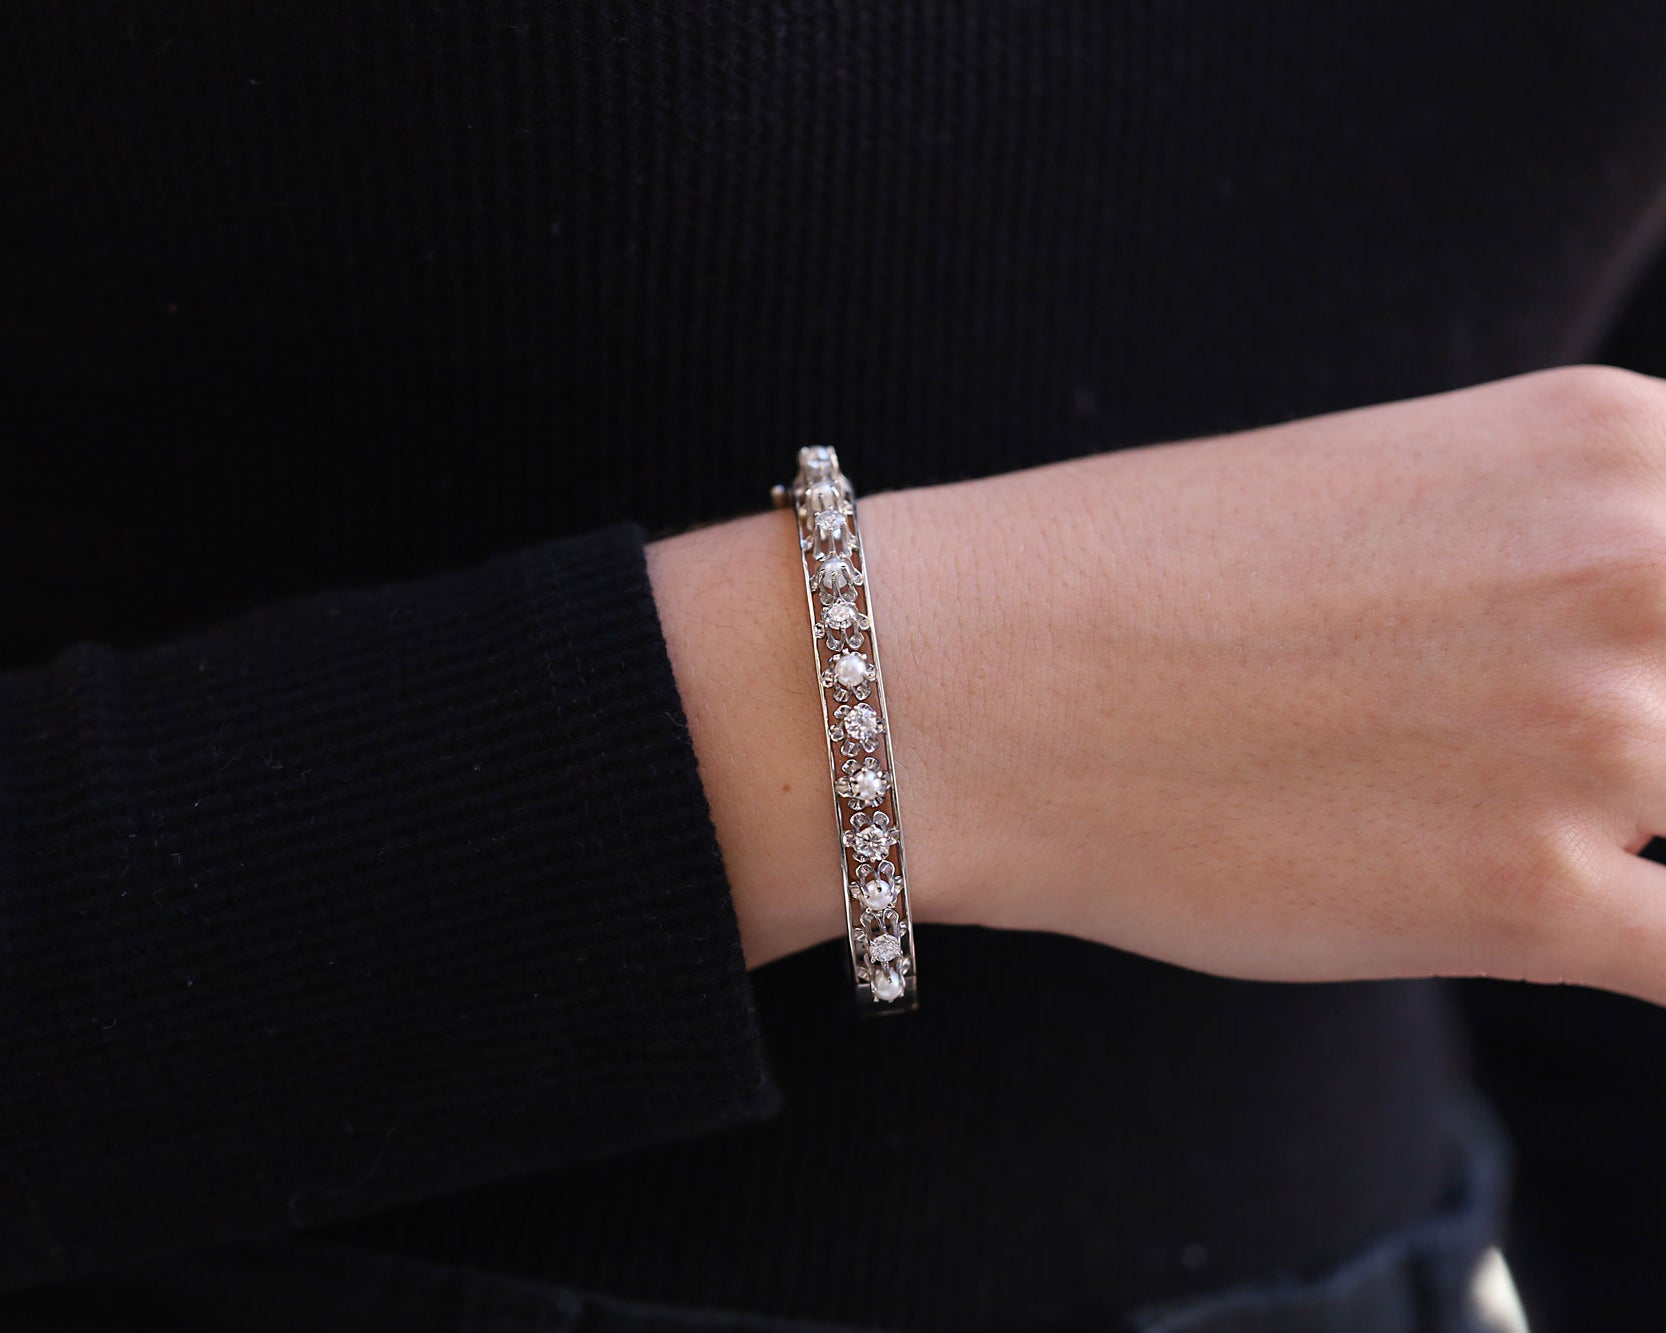 Antique Art Deco Diamond & Pearl Buttercup Bangle Bracelet